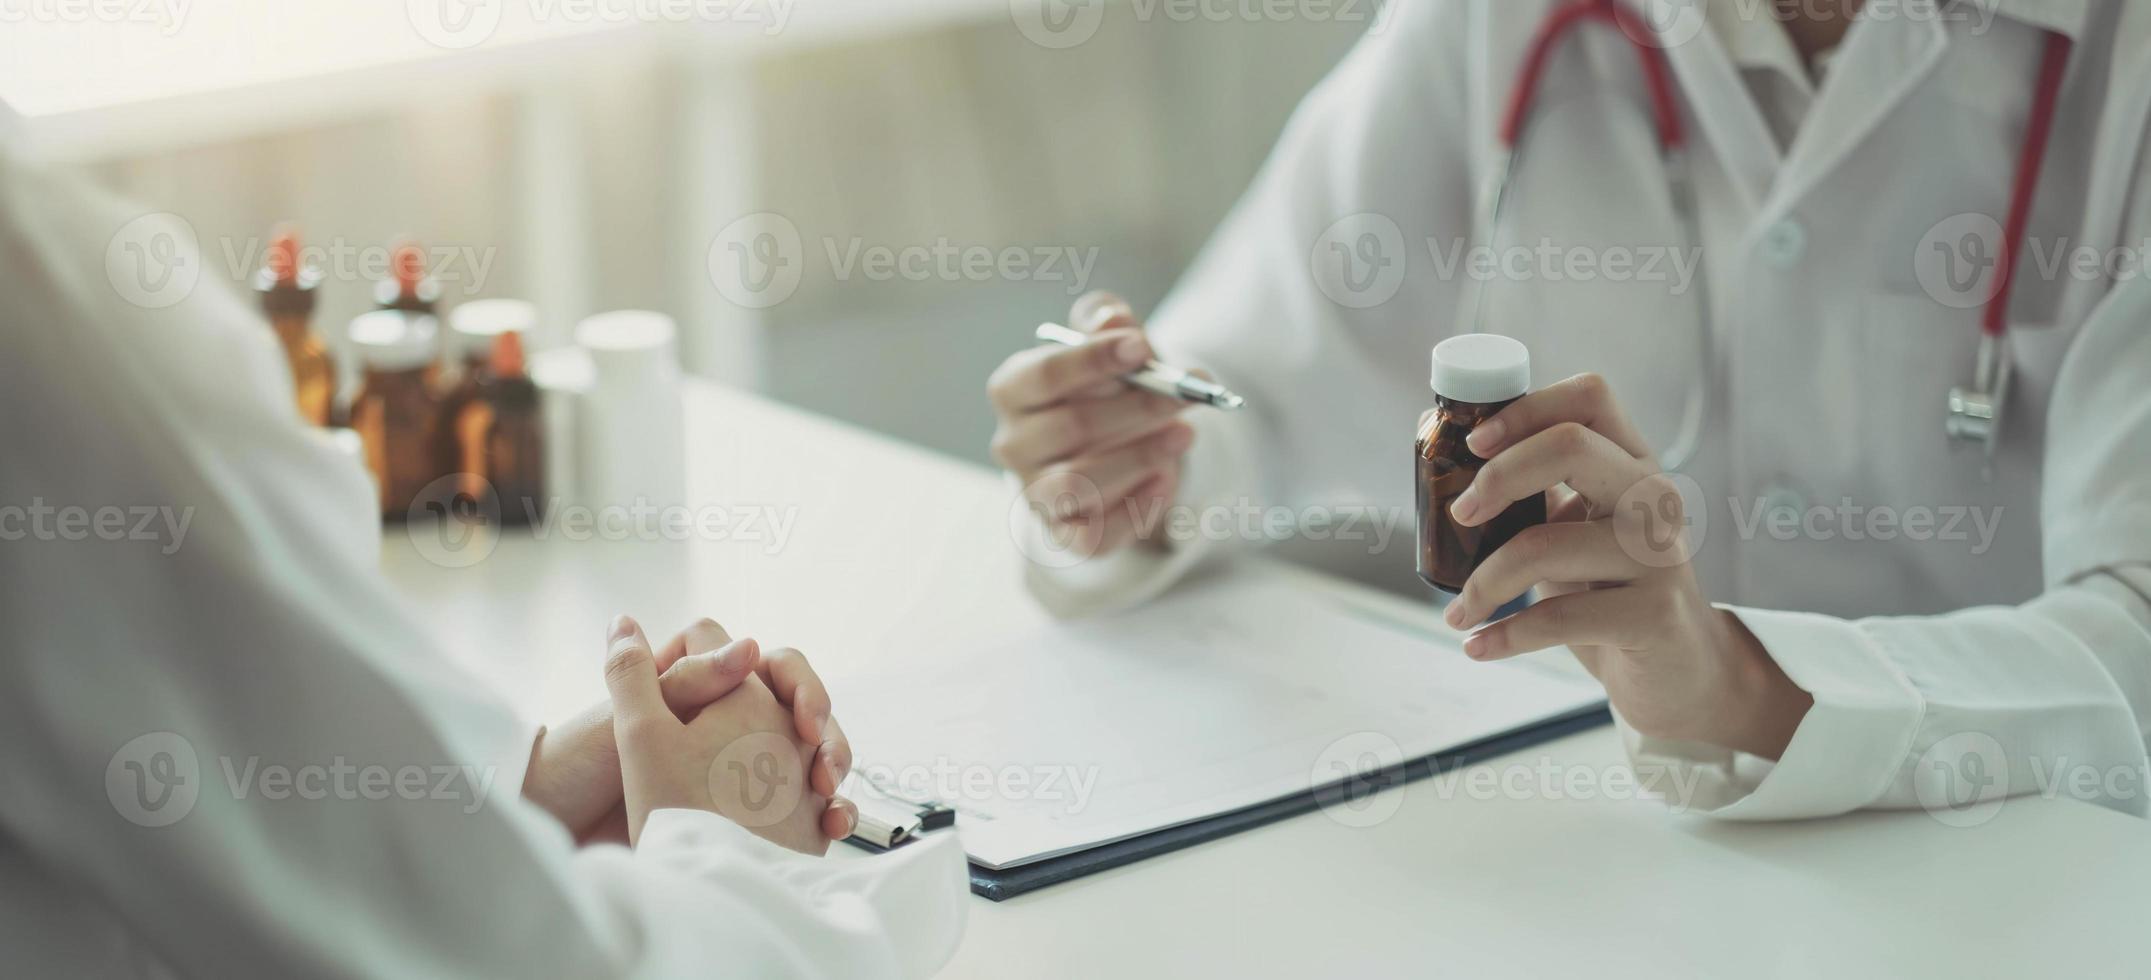 zelfverzekerde man en vrouw die een pilfles vasthouden terwijl ze met de patiënt praten en medicijnen op kantoor beoordelen. foto